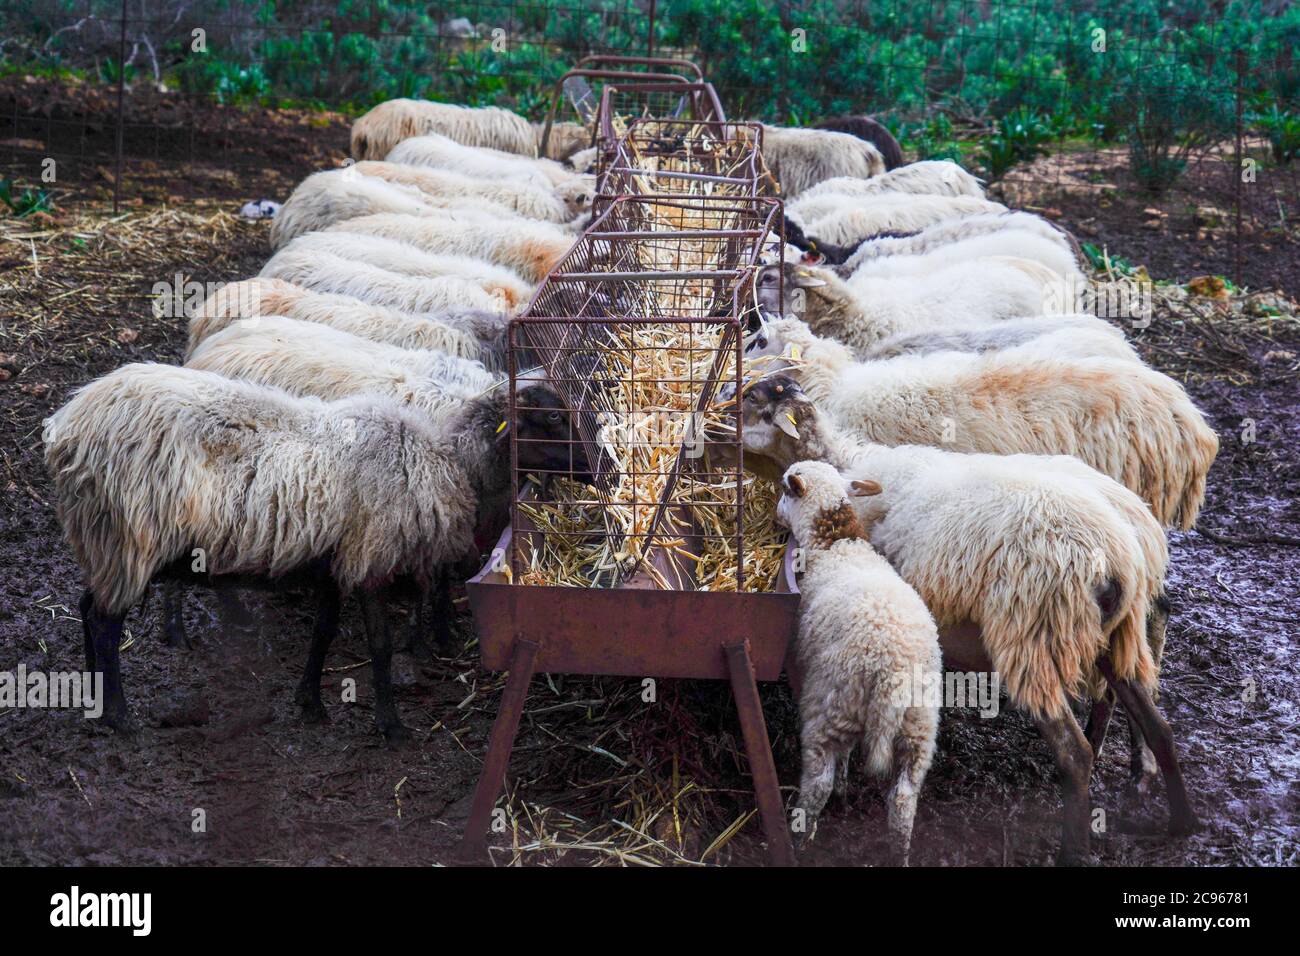 Un troupeau de chèvres en pâturage libre. Photographié sur l'île de Crète, Grèce Banque D'Images